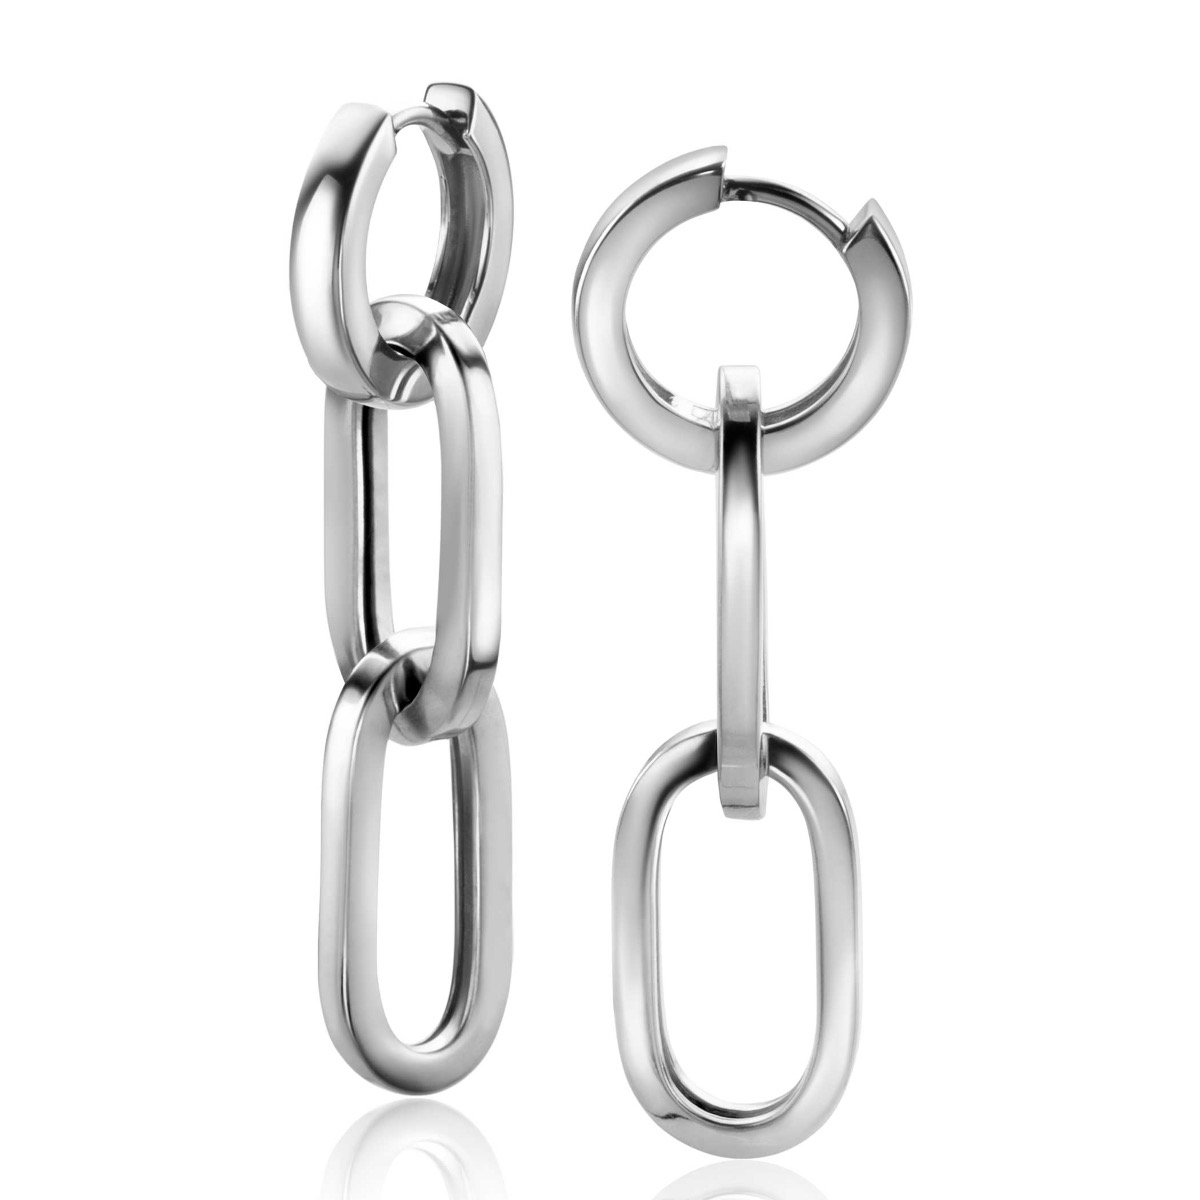 37mm ZINZI Sterling Silver Earrings Pendants 2 Long Paperclip Chains ZICH2352 (excl. hoop earrings)